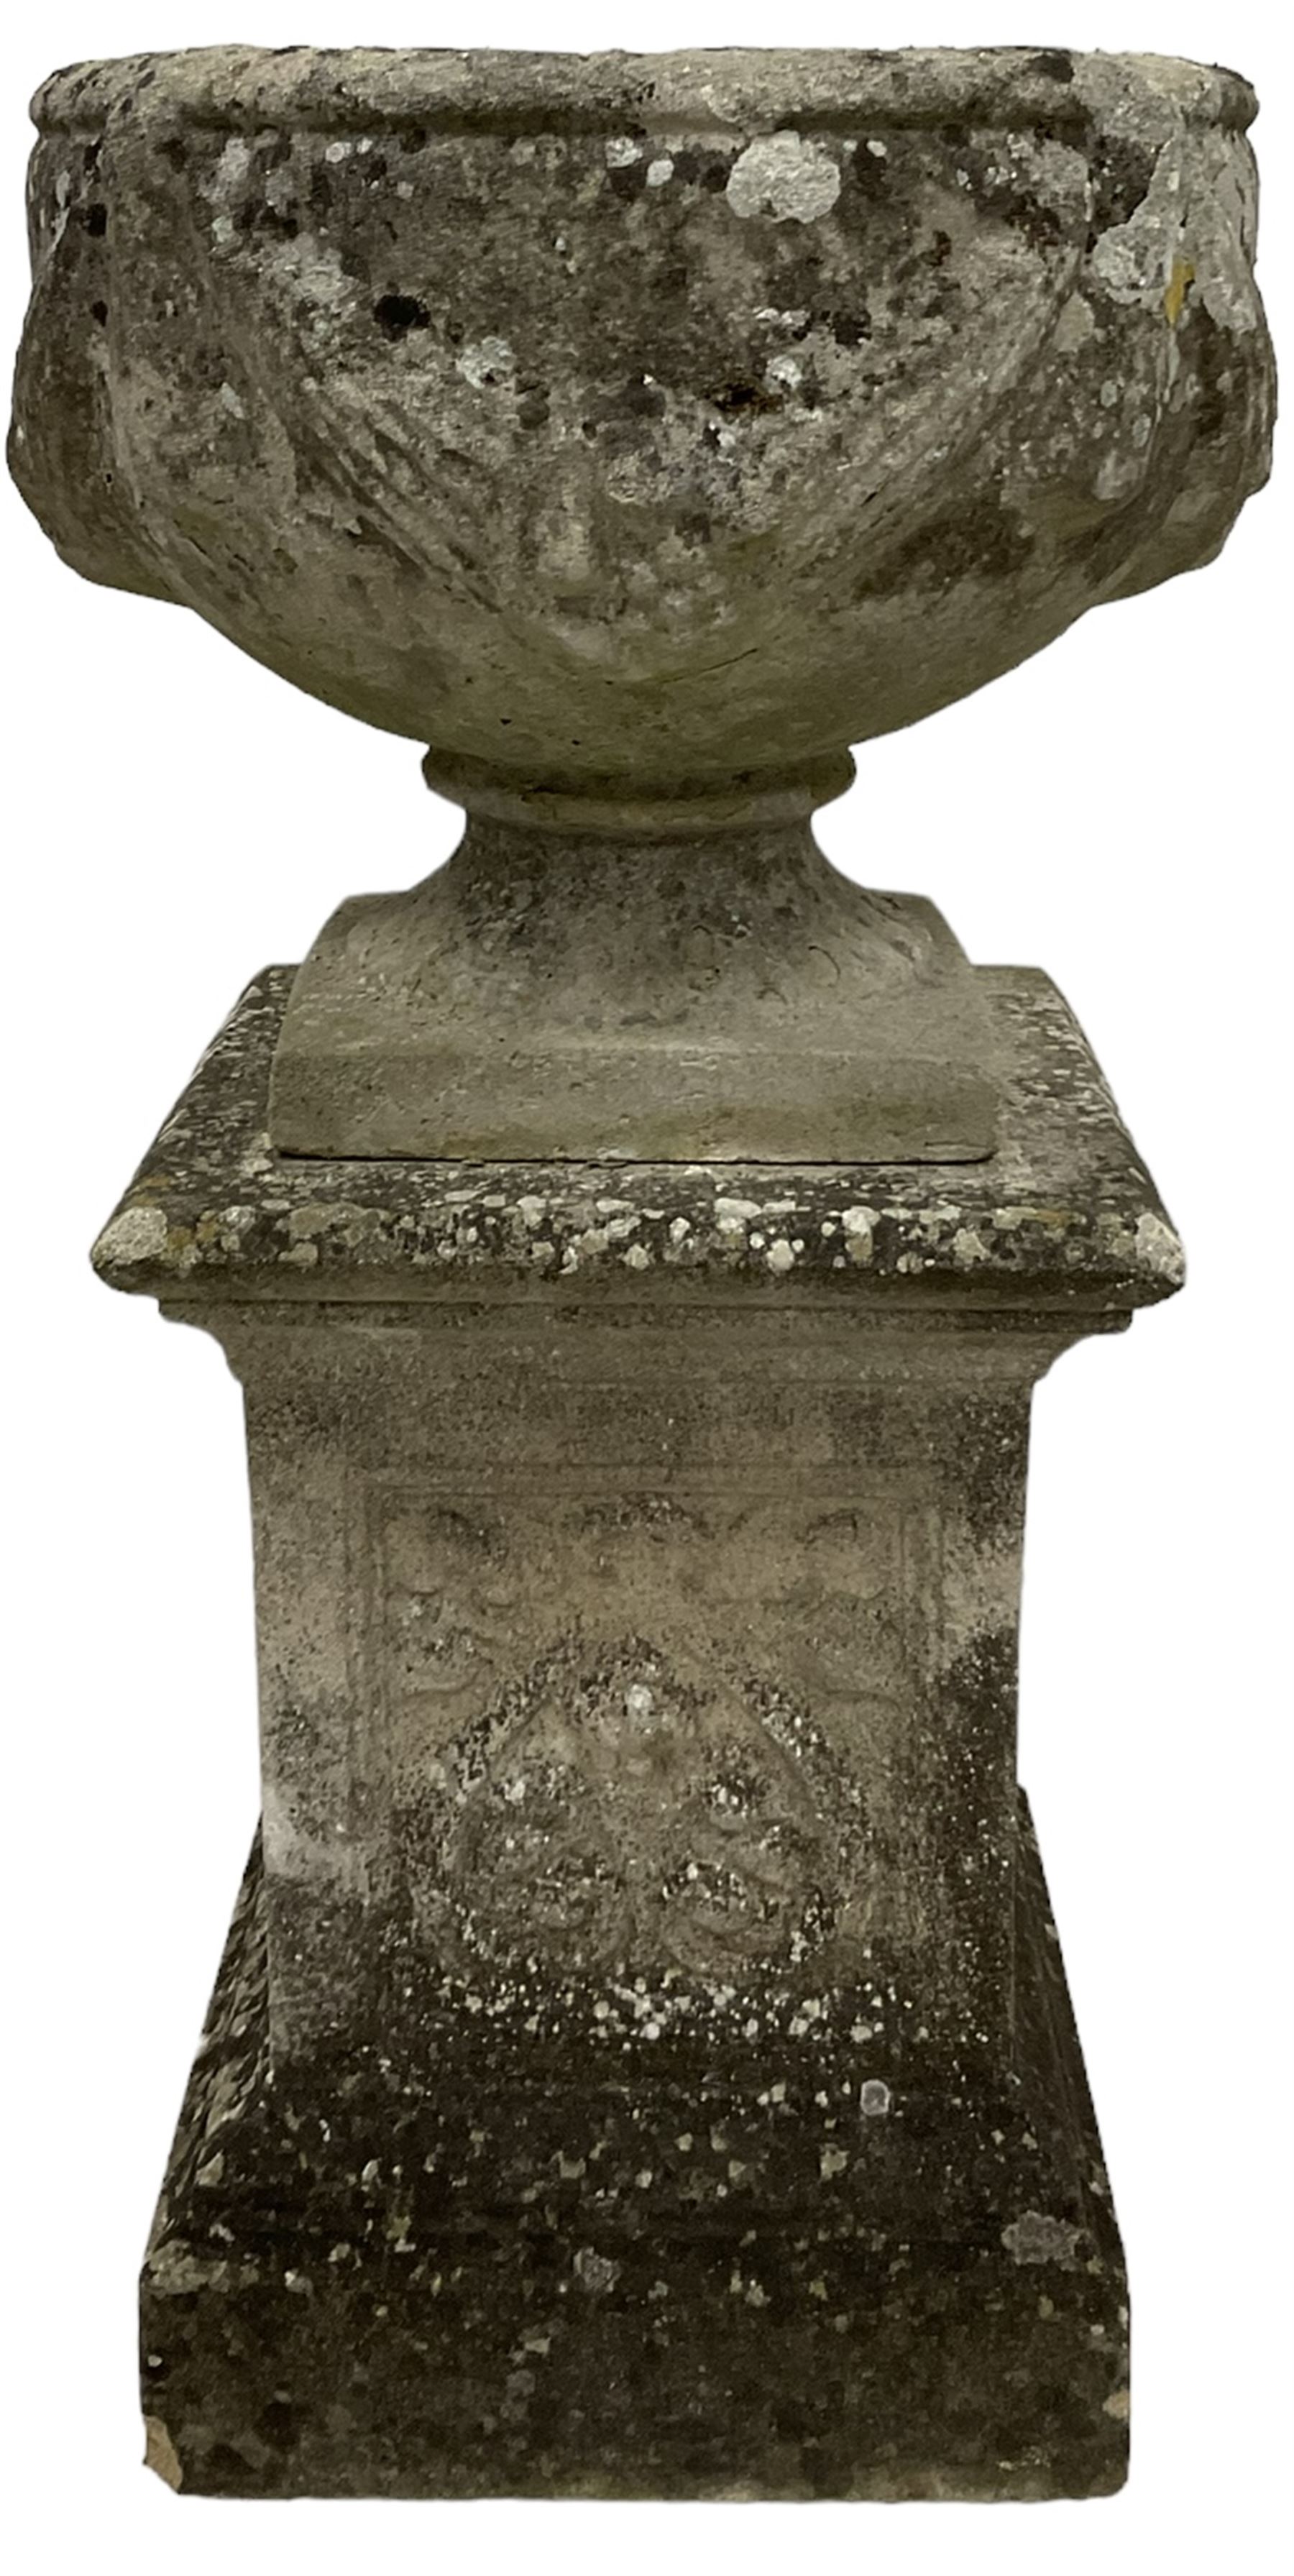 Reconstituted urn